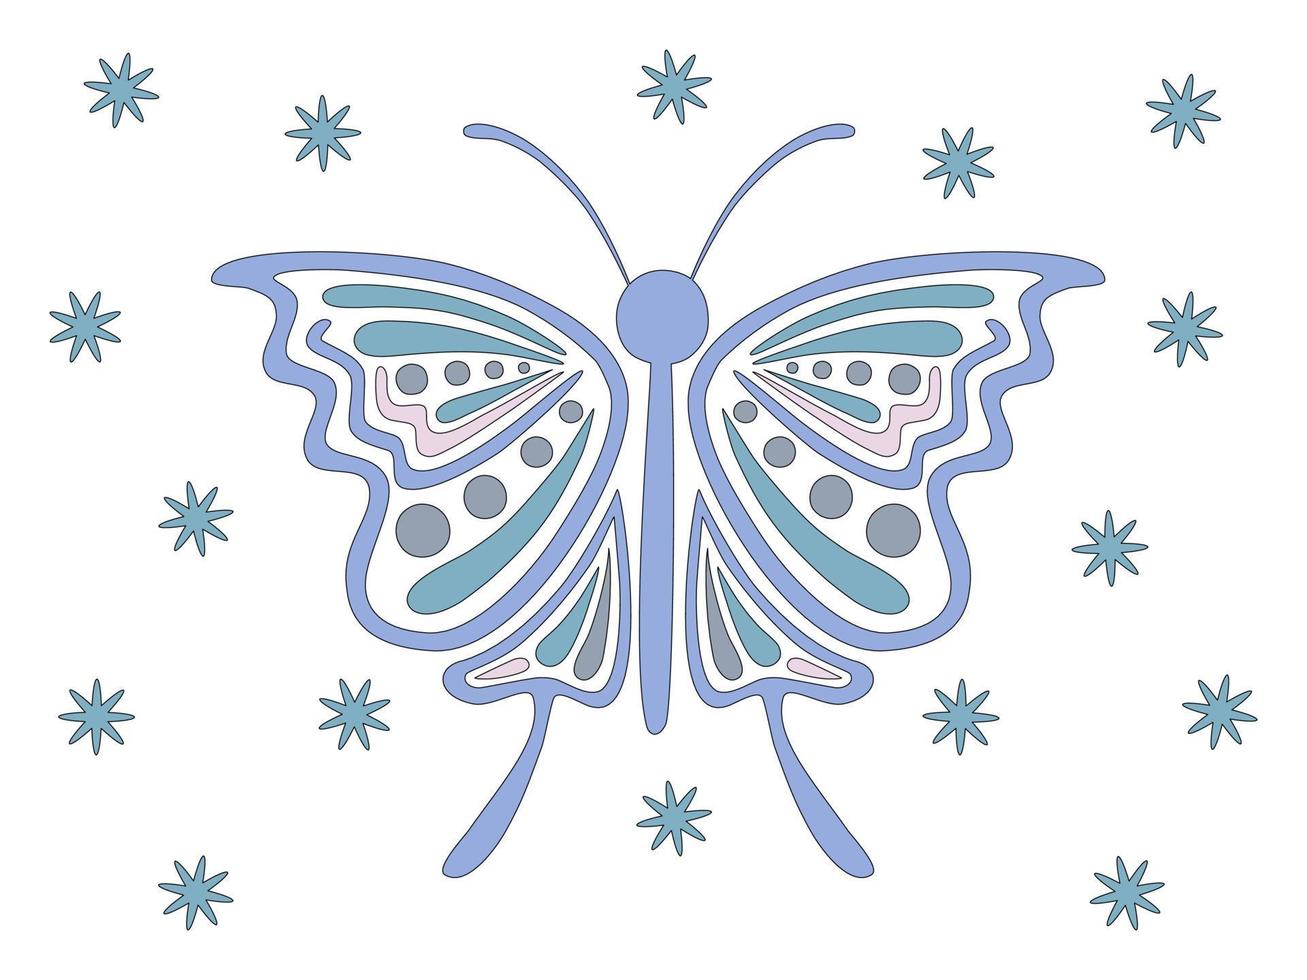 Sammlung von Schmetterlingen in Pastelltönen im Doodle-Stil vektor